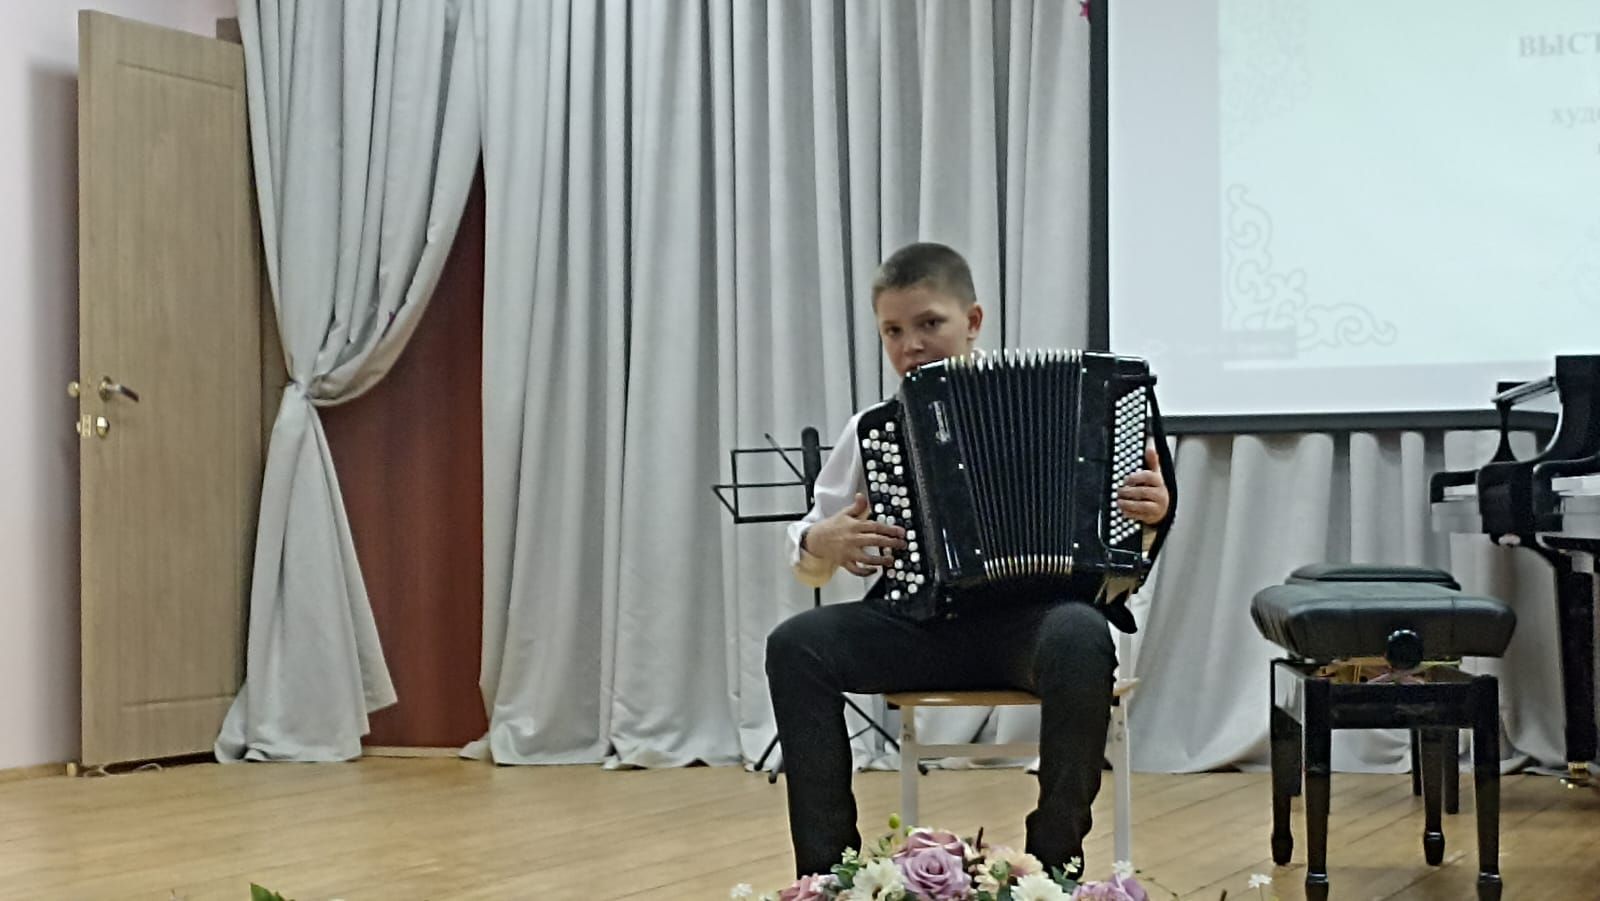 В Верхнем Услоне прошел концерт татарской музыки